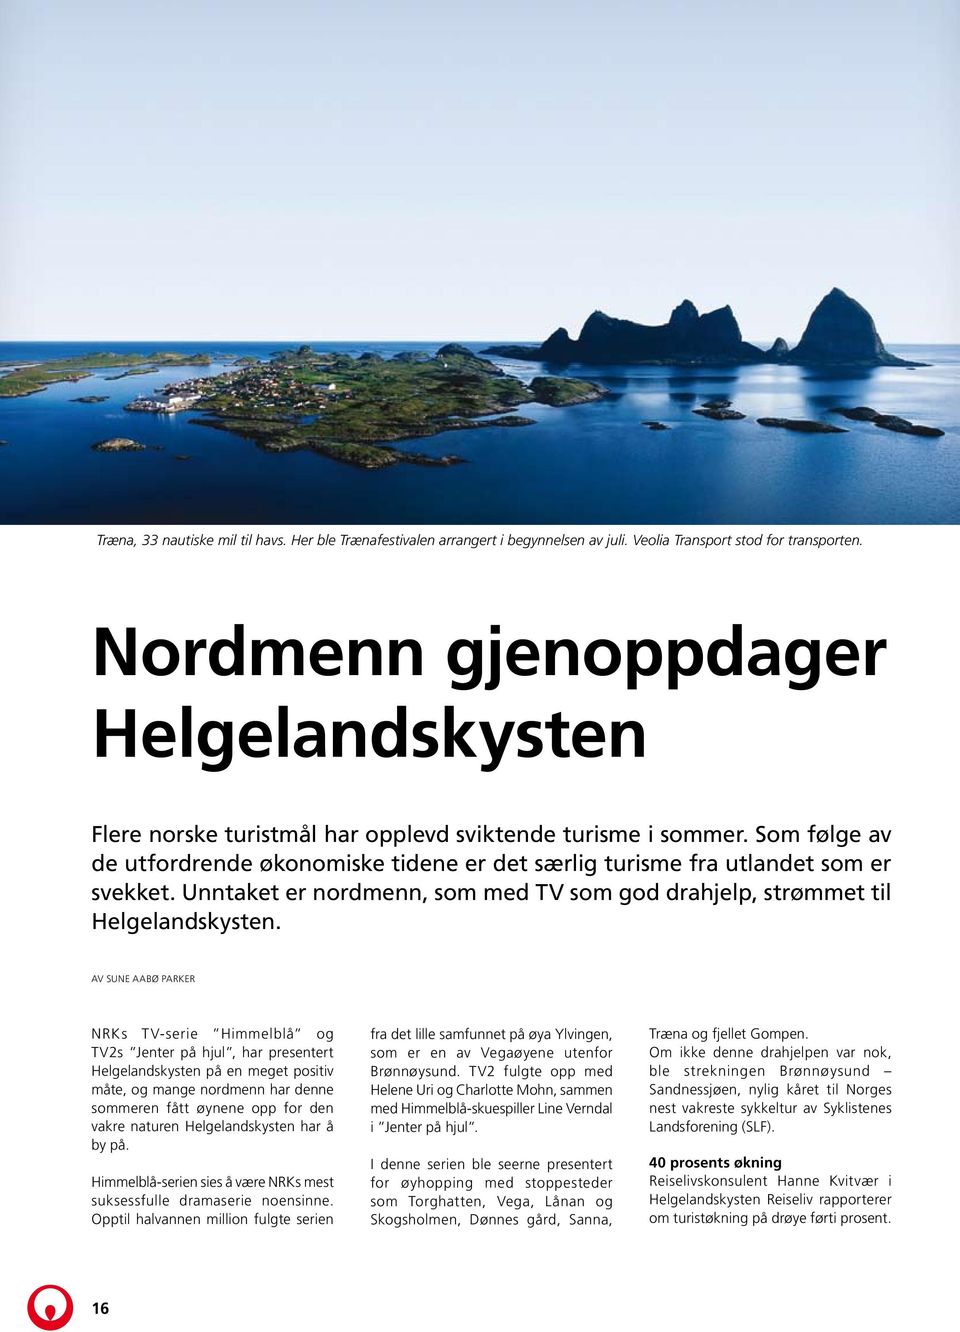 Unntaket er nordmenn, som med TV som god drahjelp, strømmet til Helgelandskysten.